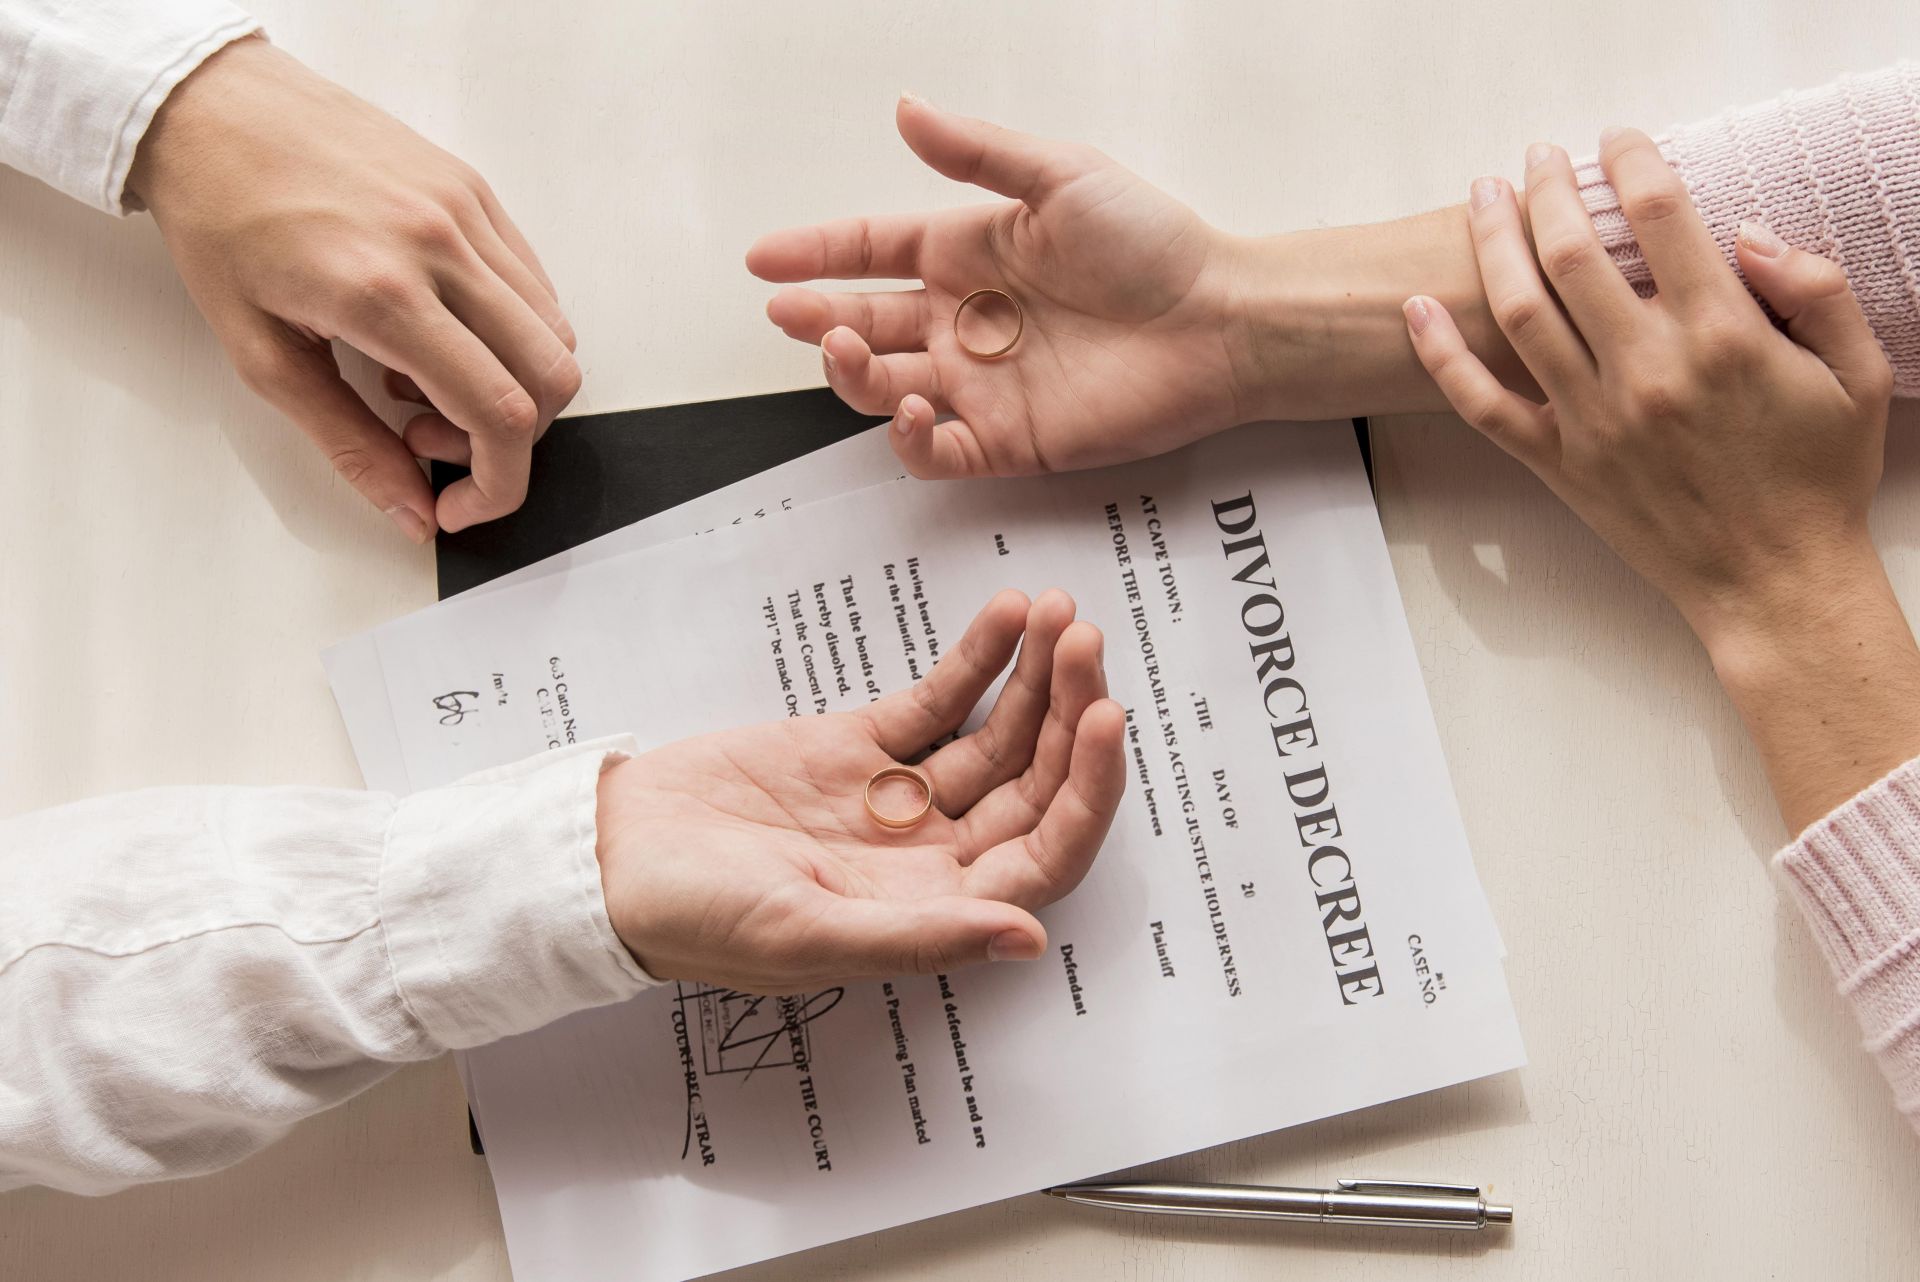 離婚律師費用：如何找到合適的費用結構和律師